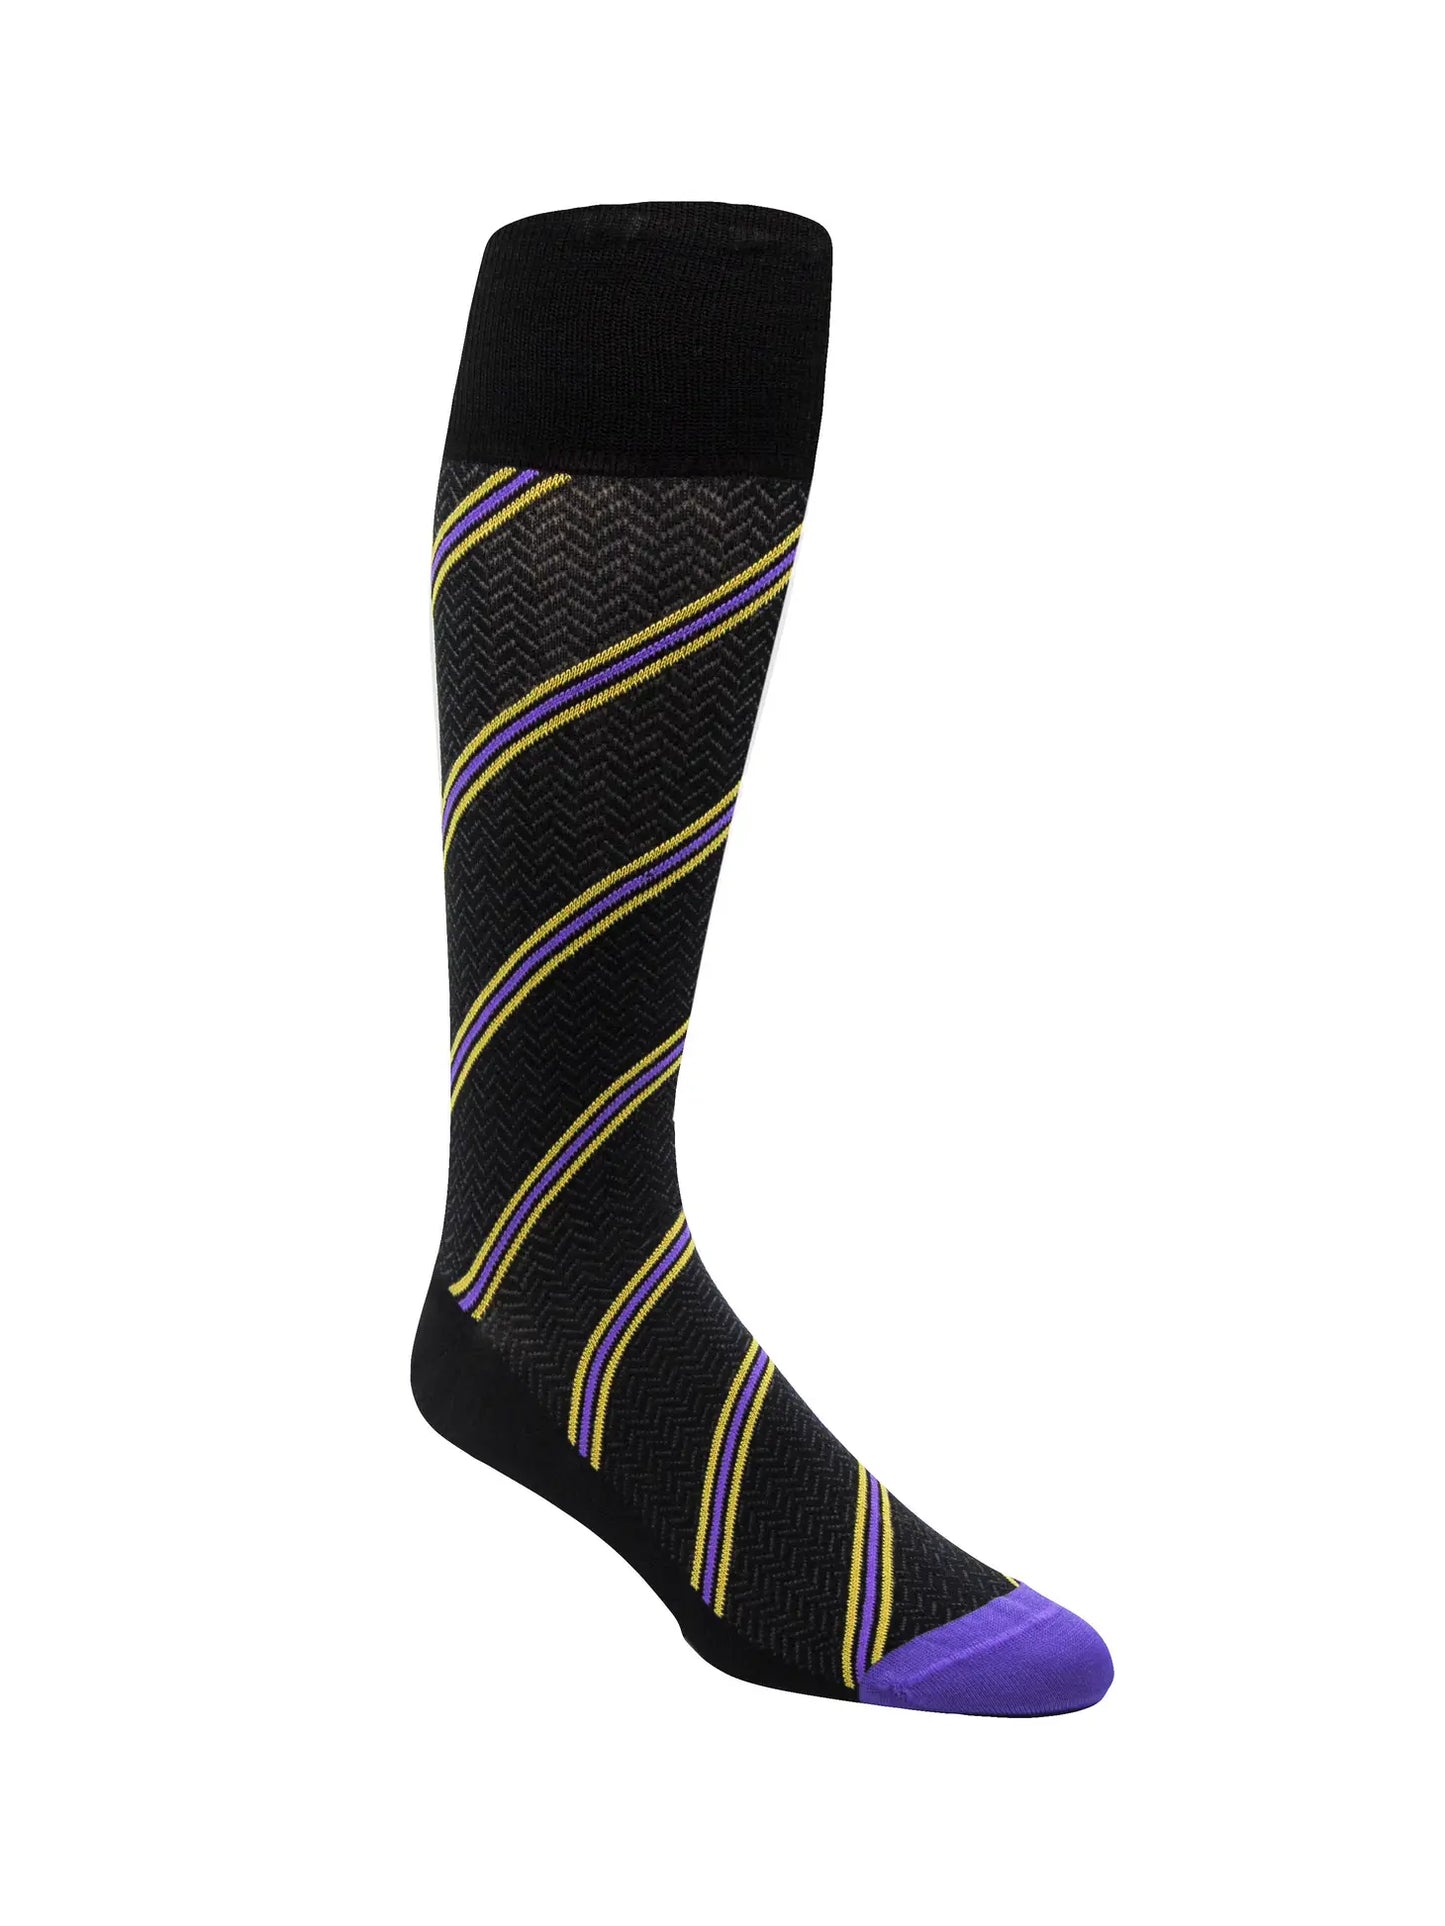 Men's Socks VKDG Black Purple and Gold Stripe